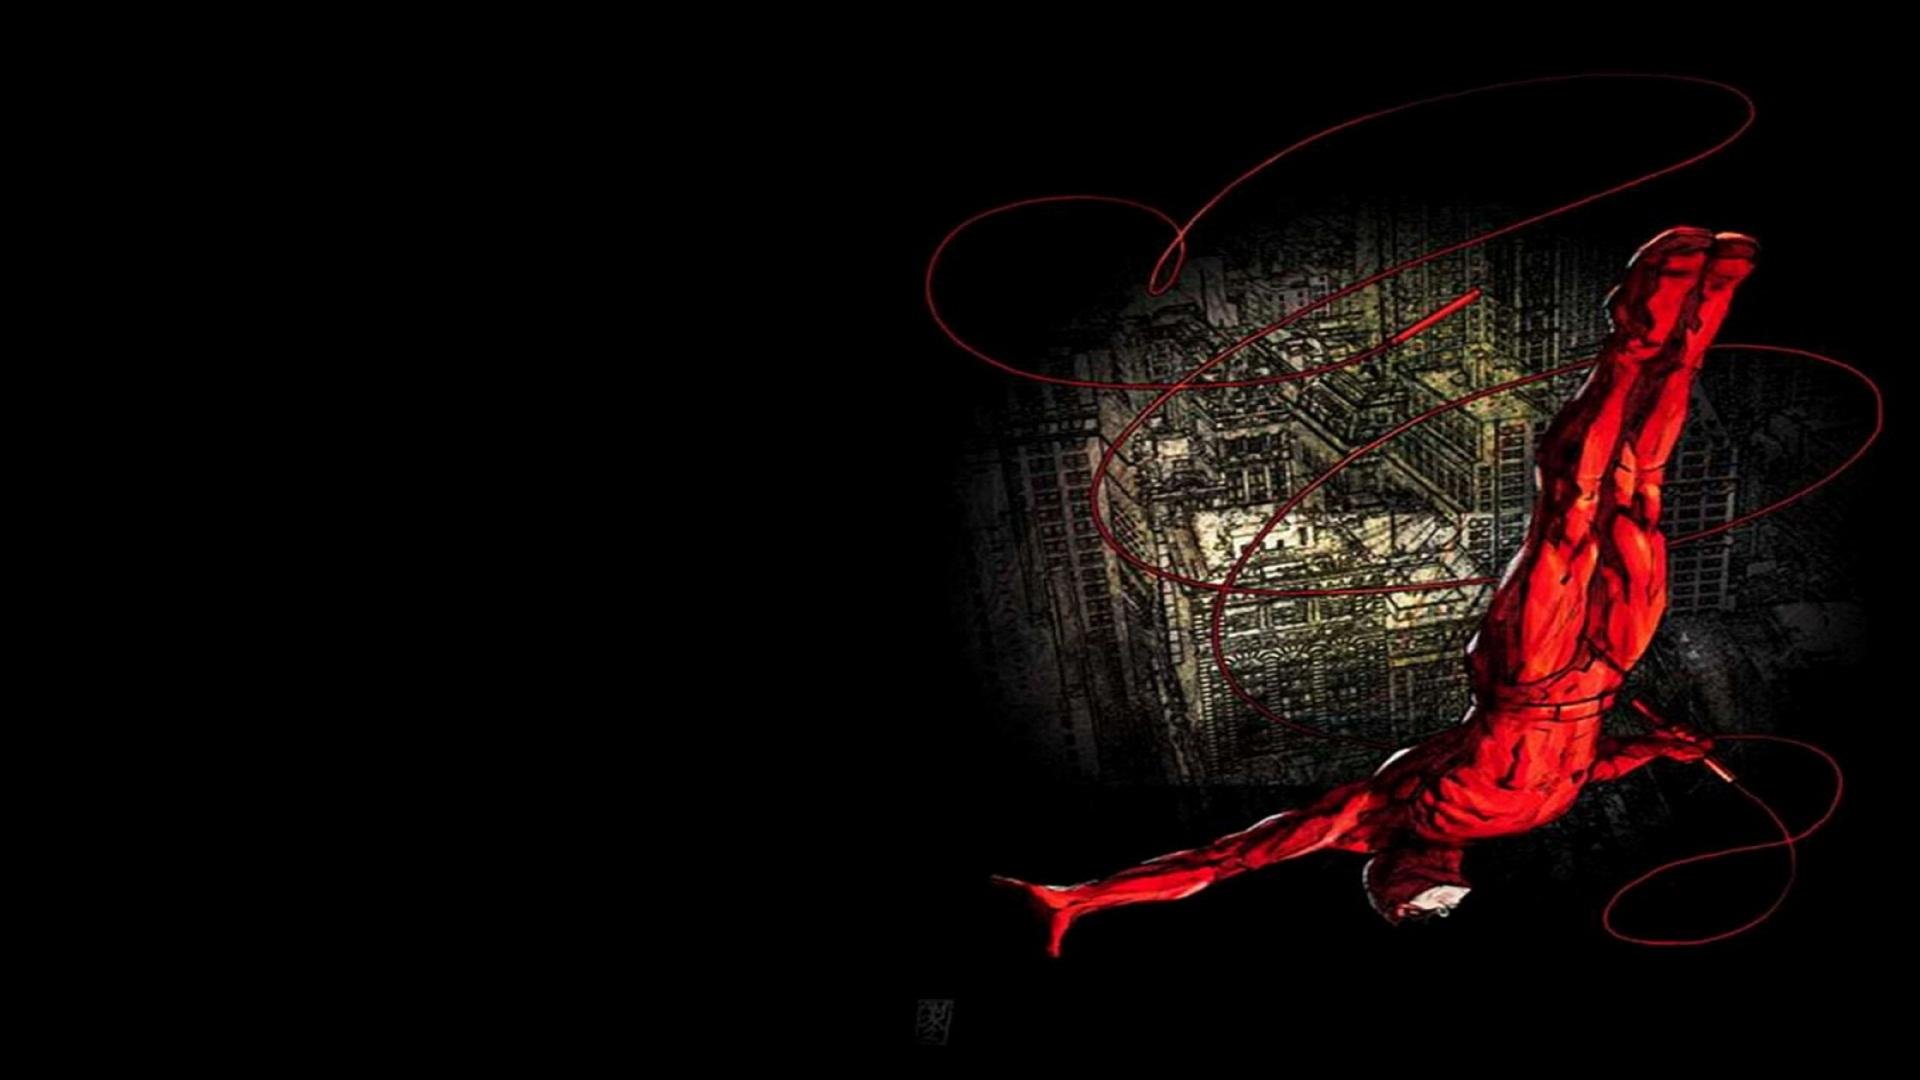 Daredevil Wallpaper